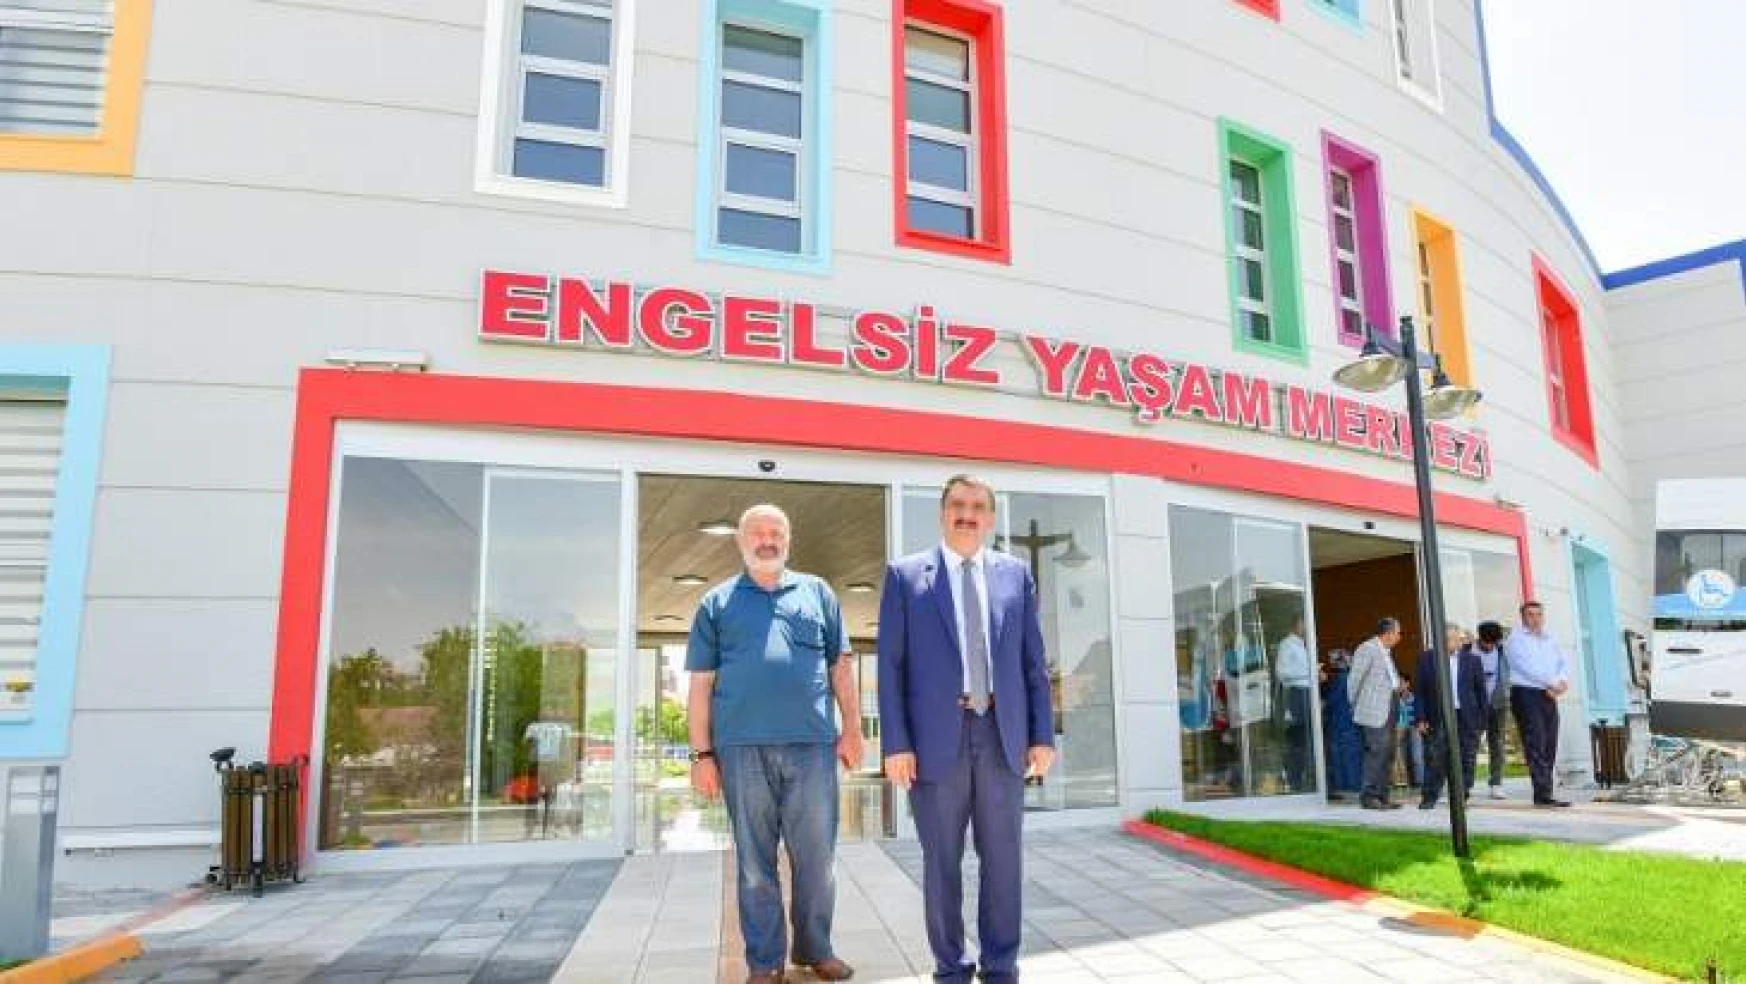 Türkiye'de İlk 3 Engelsiz Yaşam Merkezi'nden Biri Battalgazi'de